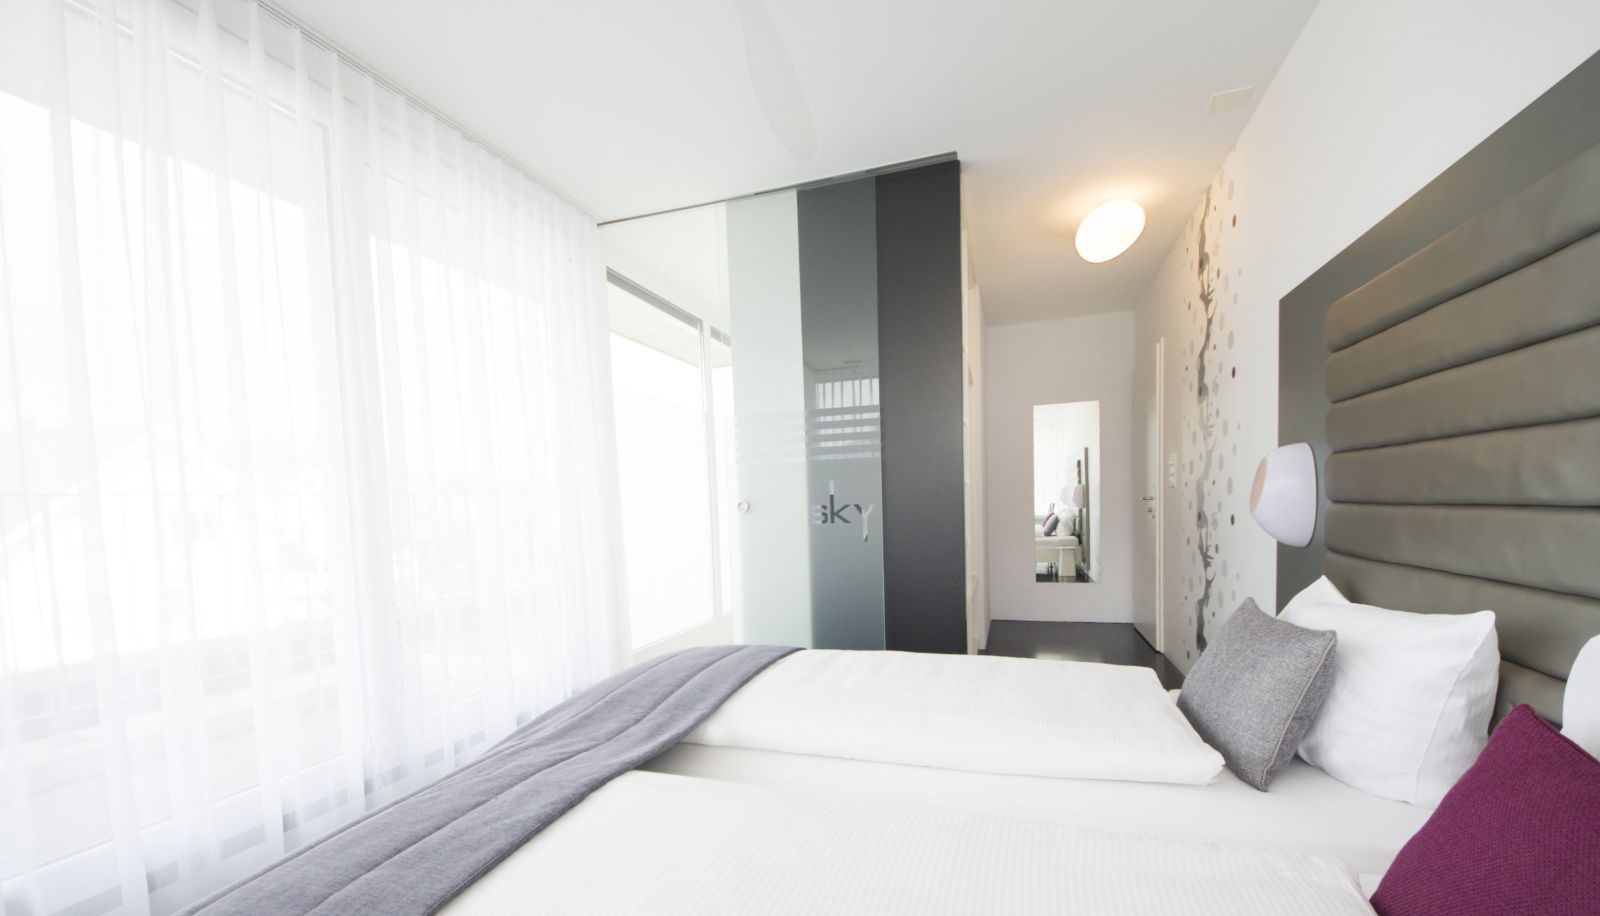 Sky Design Motel - 3 HRS star hotel in Kriessern, Oberriet (St Gallen)